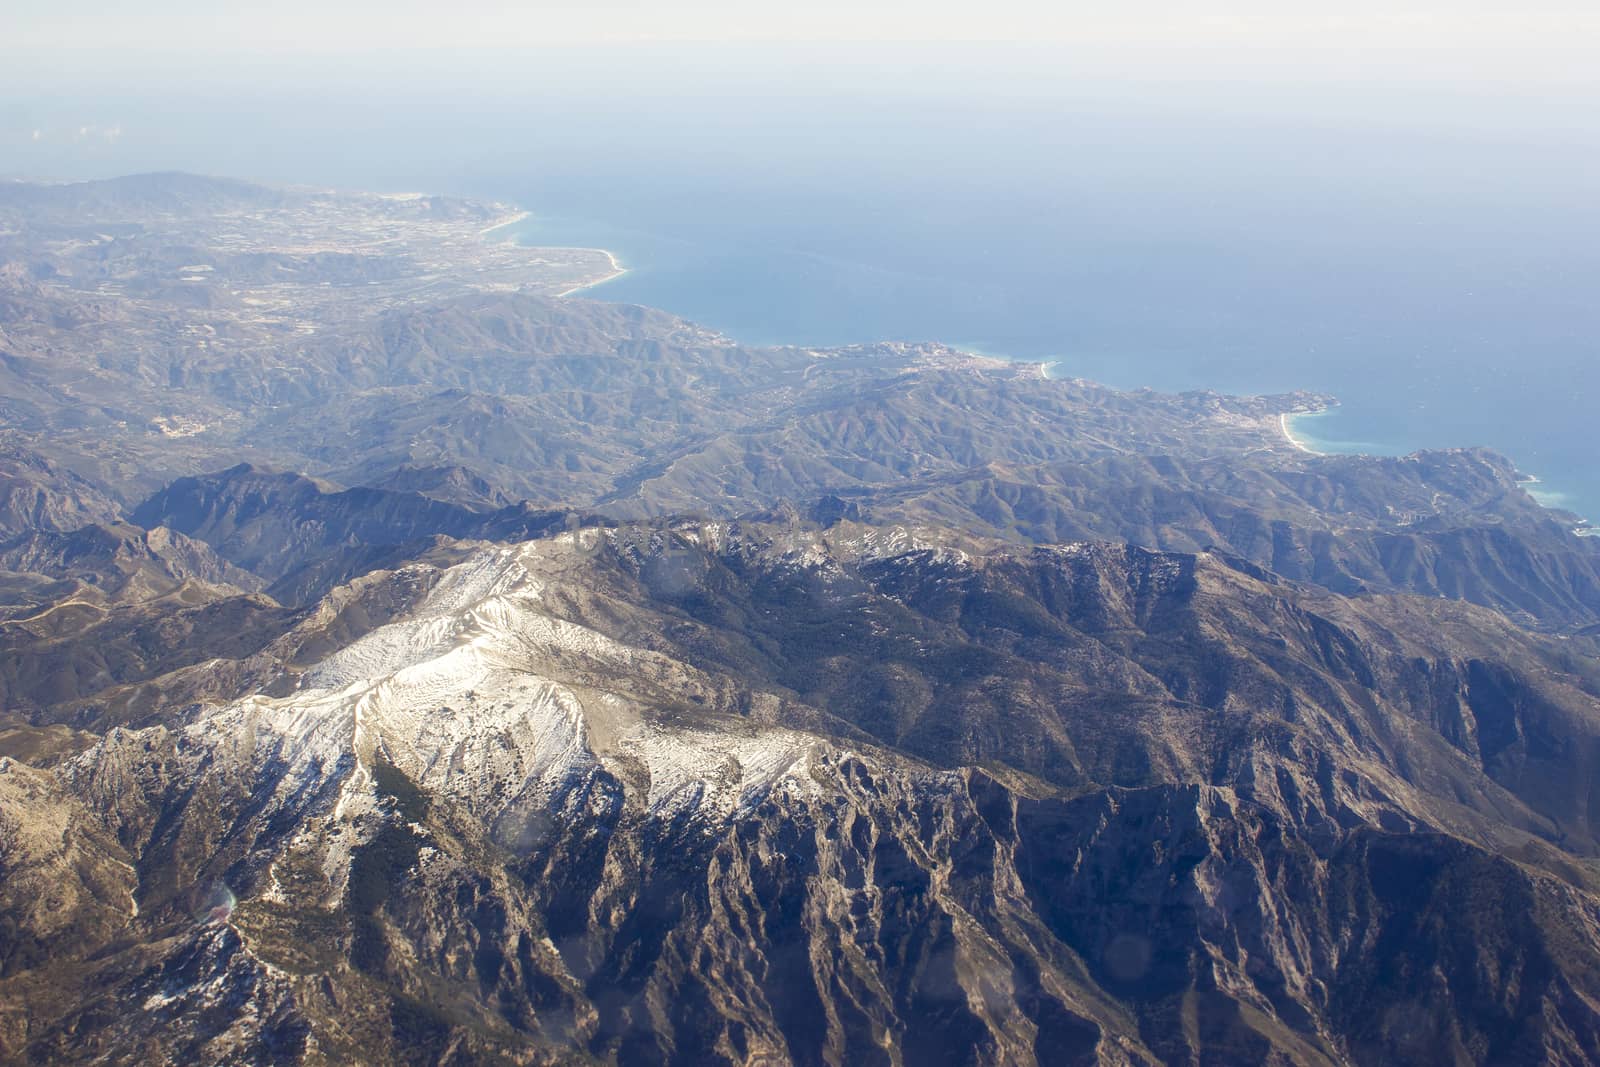 Aerial view of Sierra Nevada in Spain